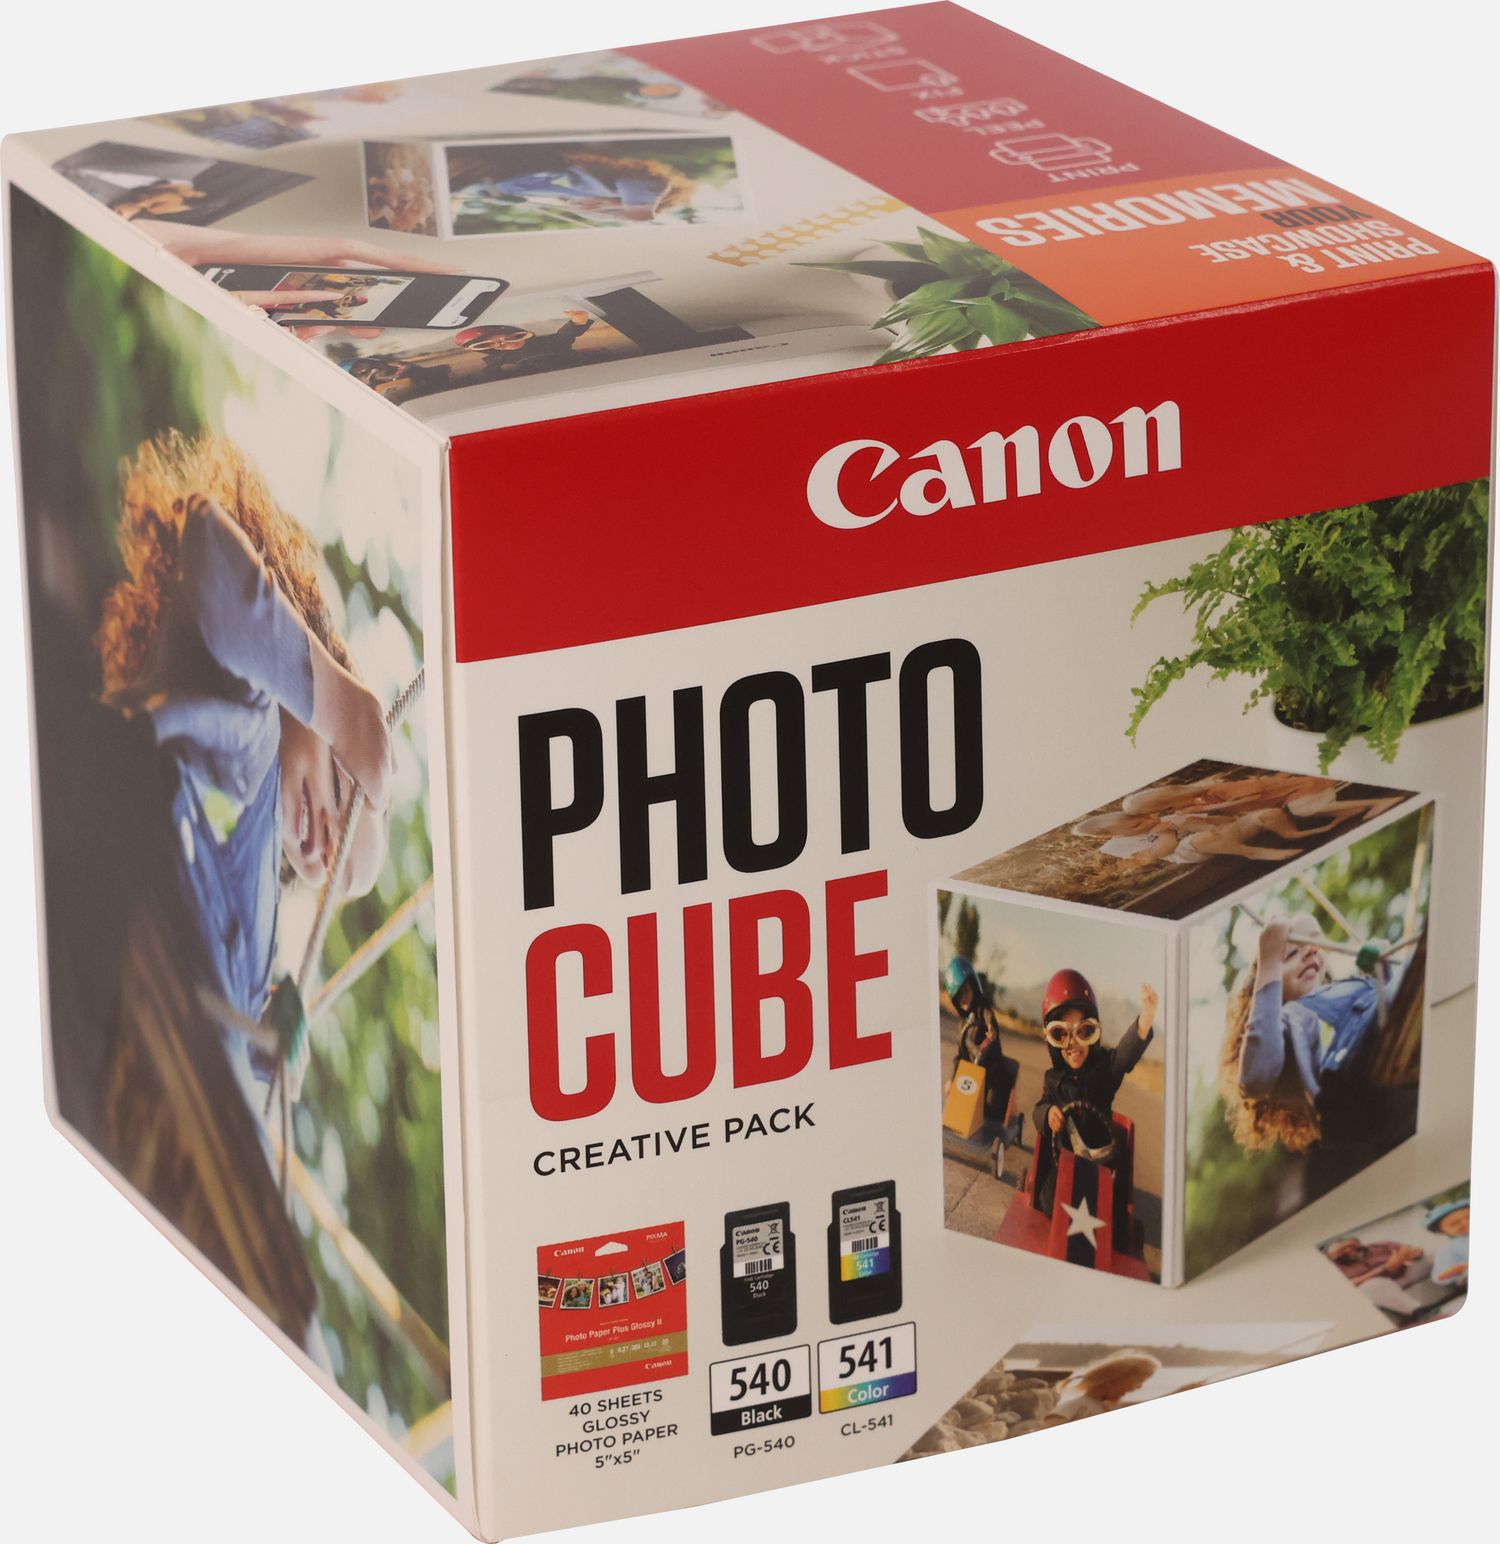 Image of Canon Photo Cube con cartucce Inkjet PG-540 + CL-541 e carta fotografica lucida Plus Glossy II PP-201 5x5" (40 fogli) - Confezione multipla, Arancione